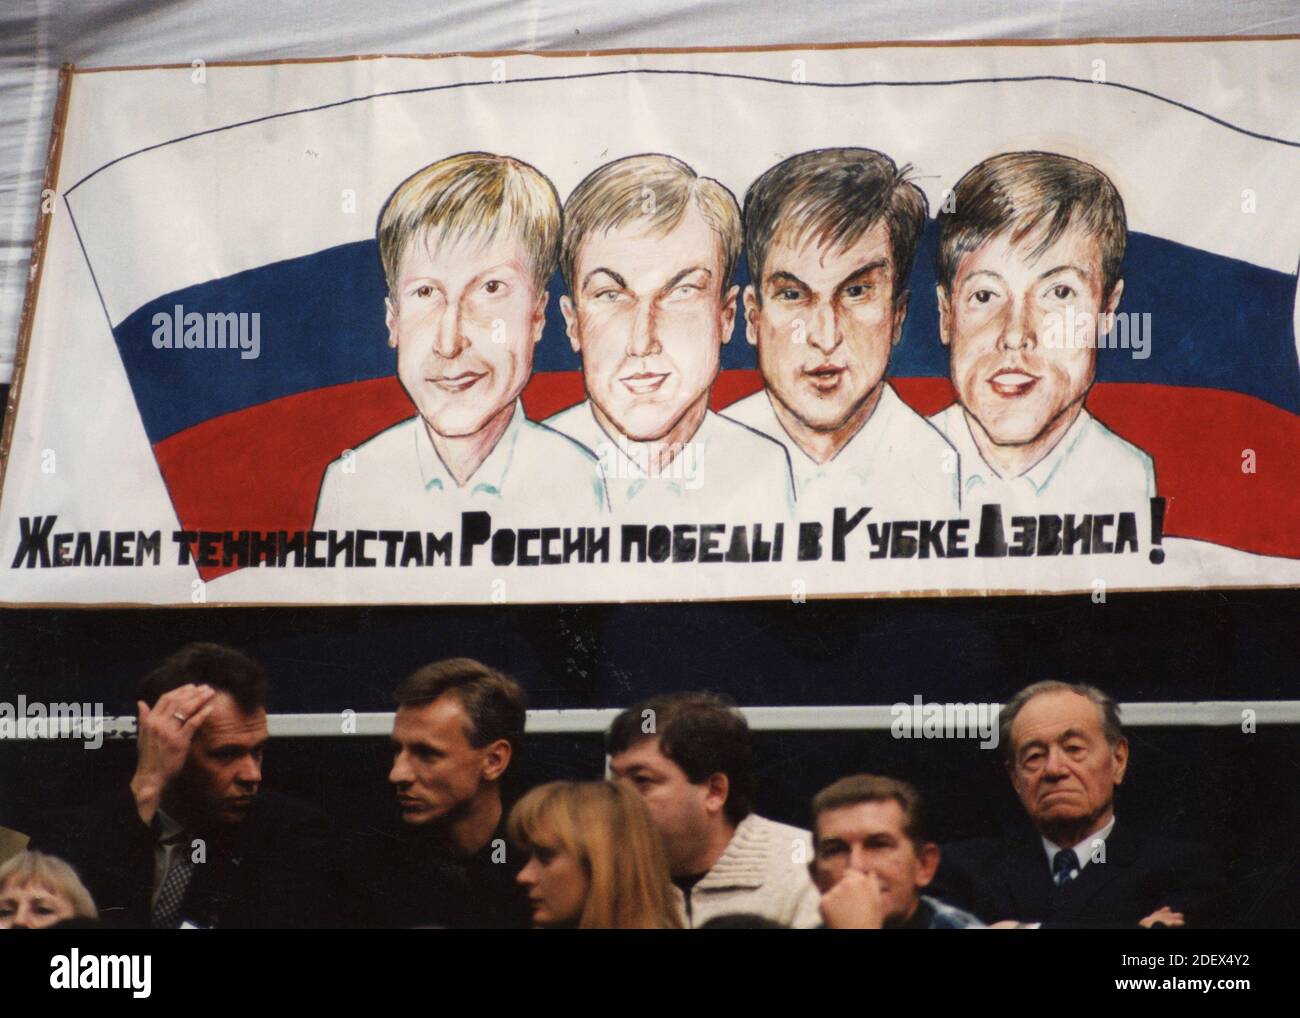 Supporters russes au match de tennis, années 1990 Banque D'Images